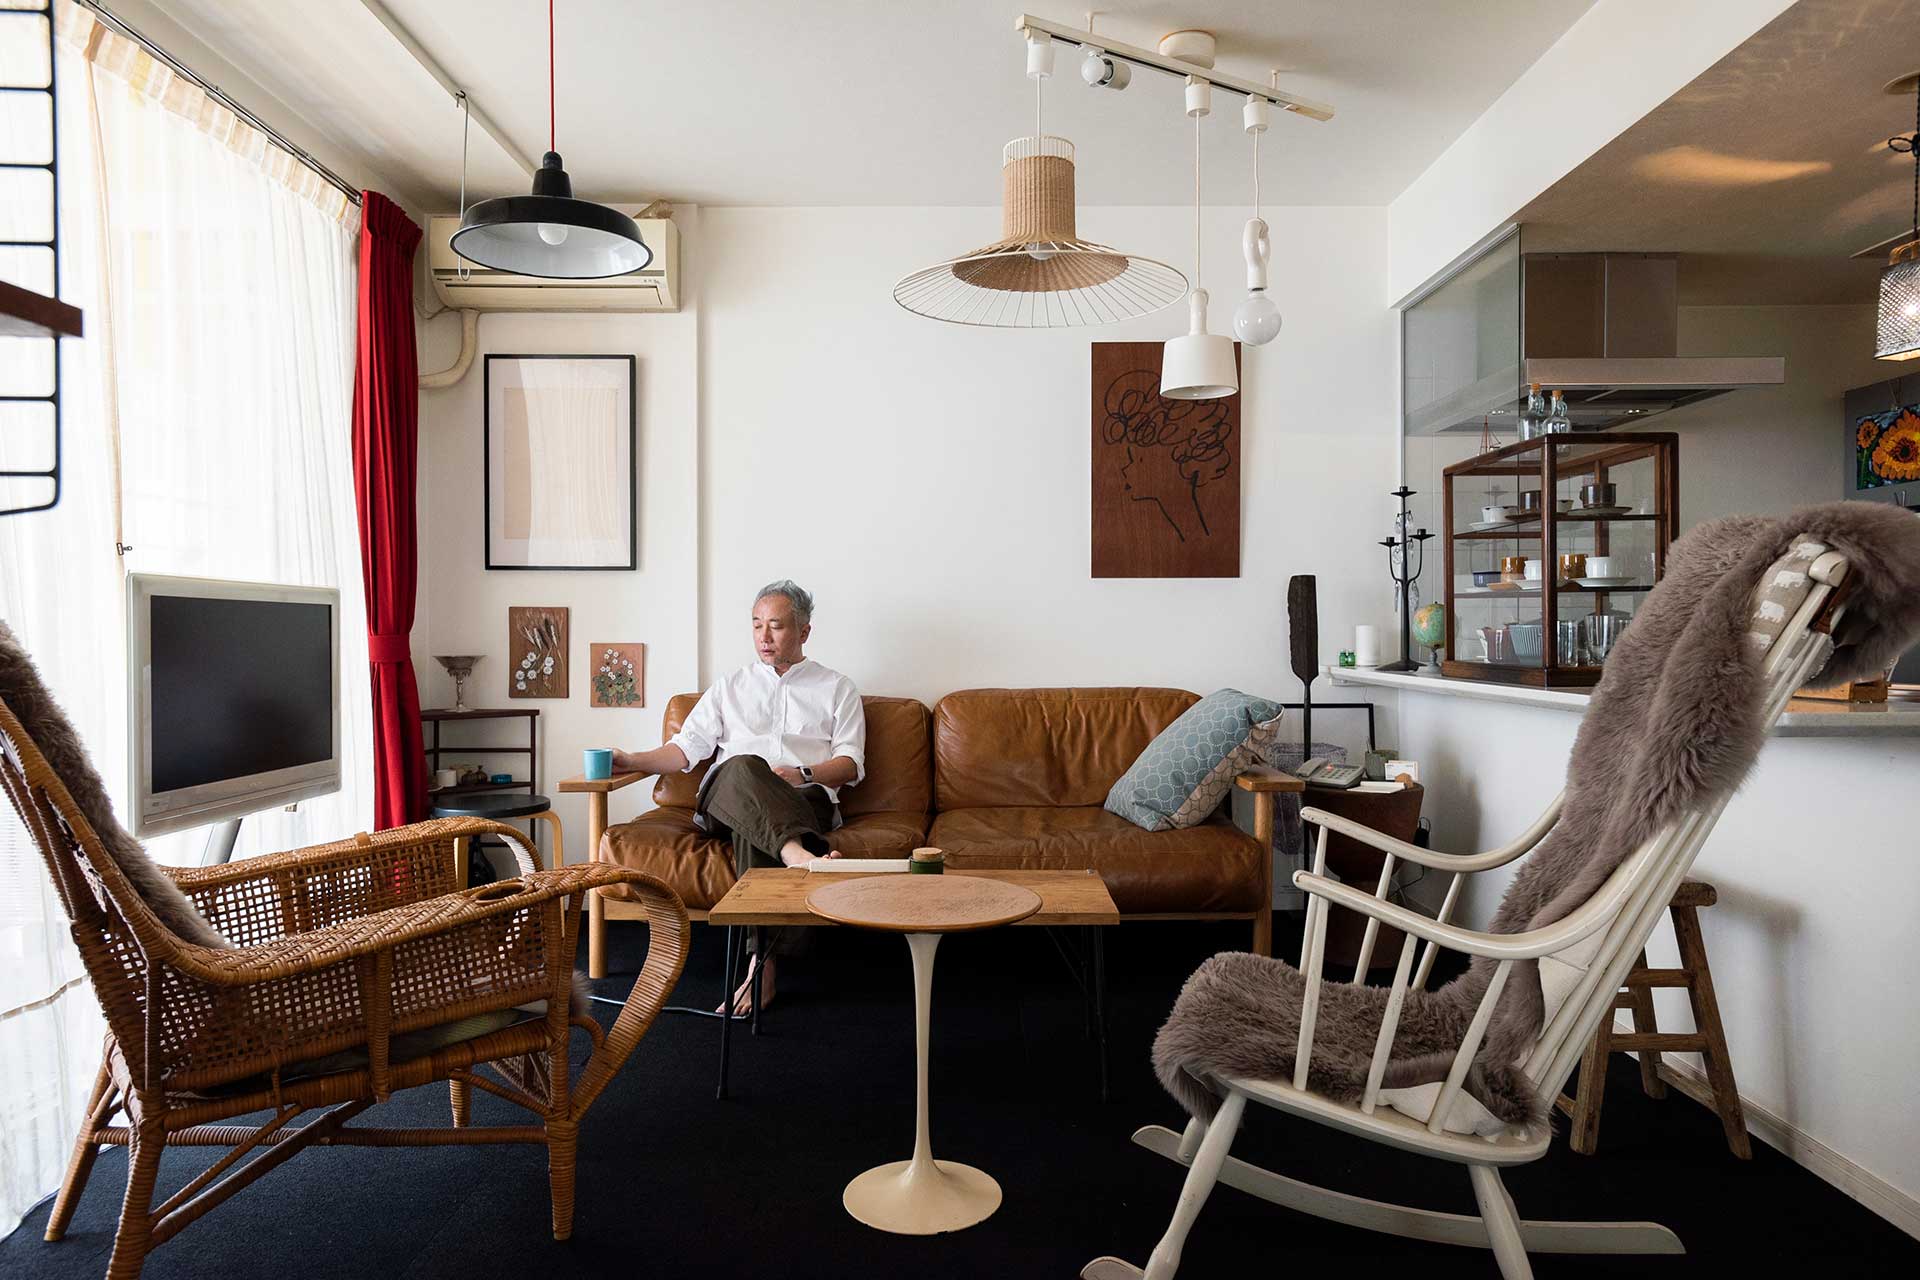 「家具は新作とヴィンテージをバランス良く取り入れるようにしています」